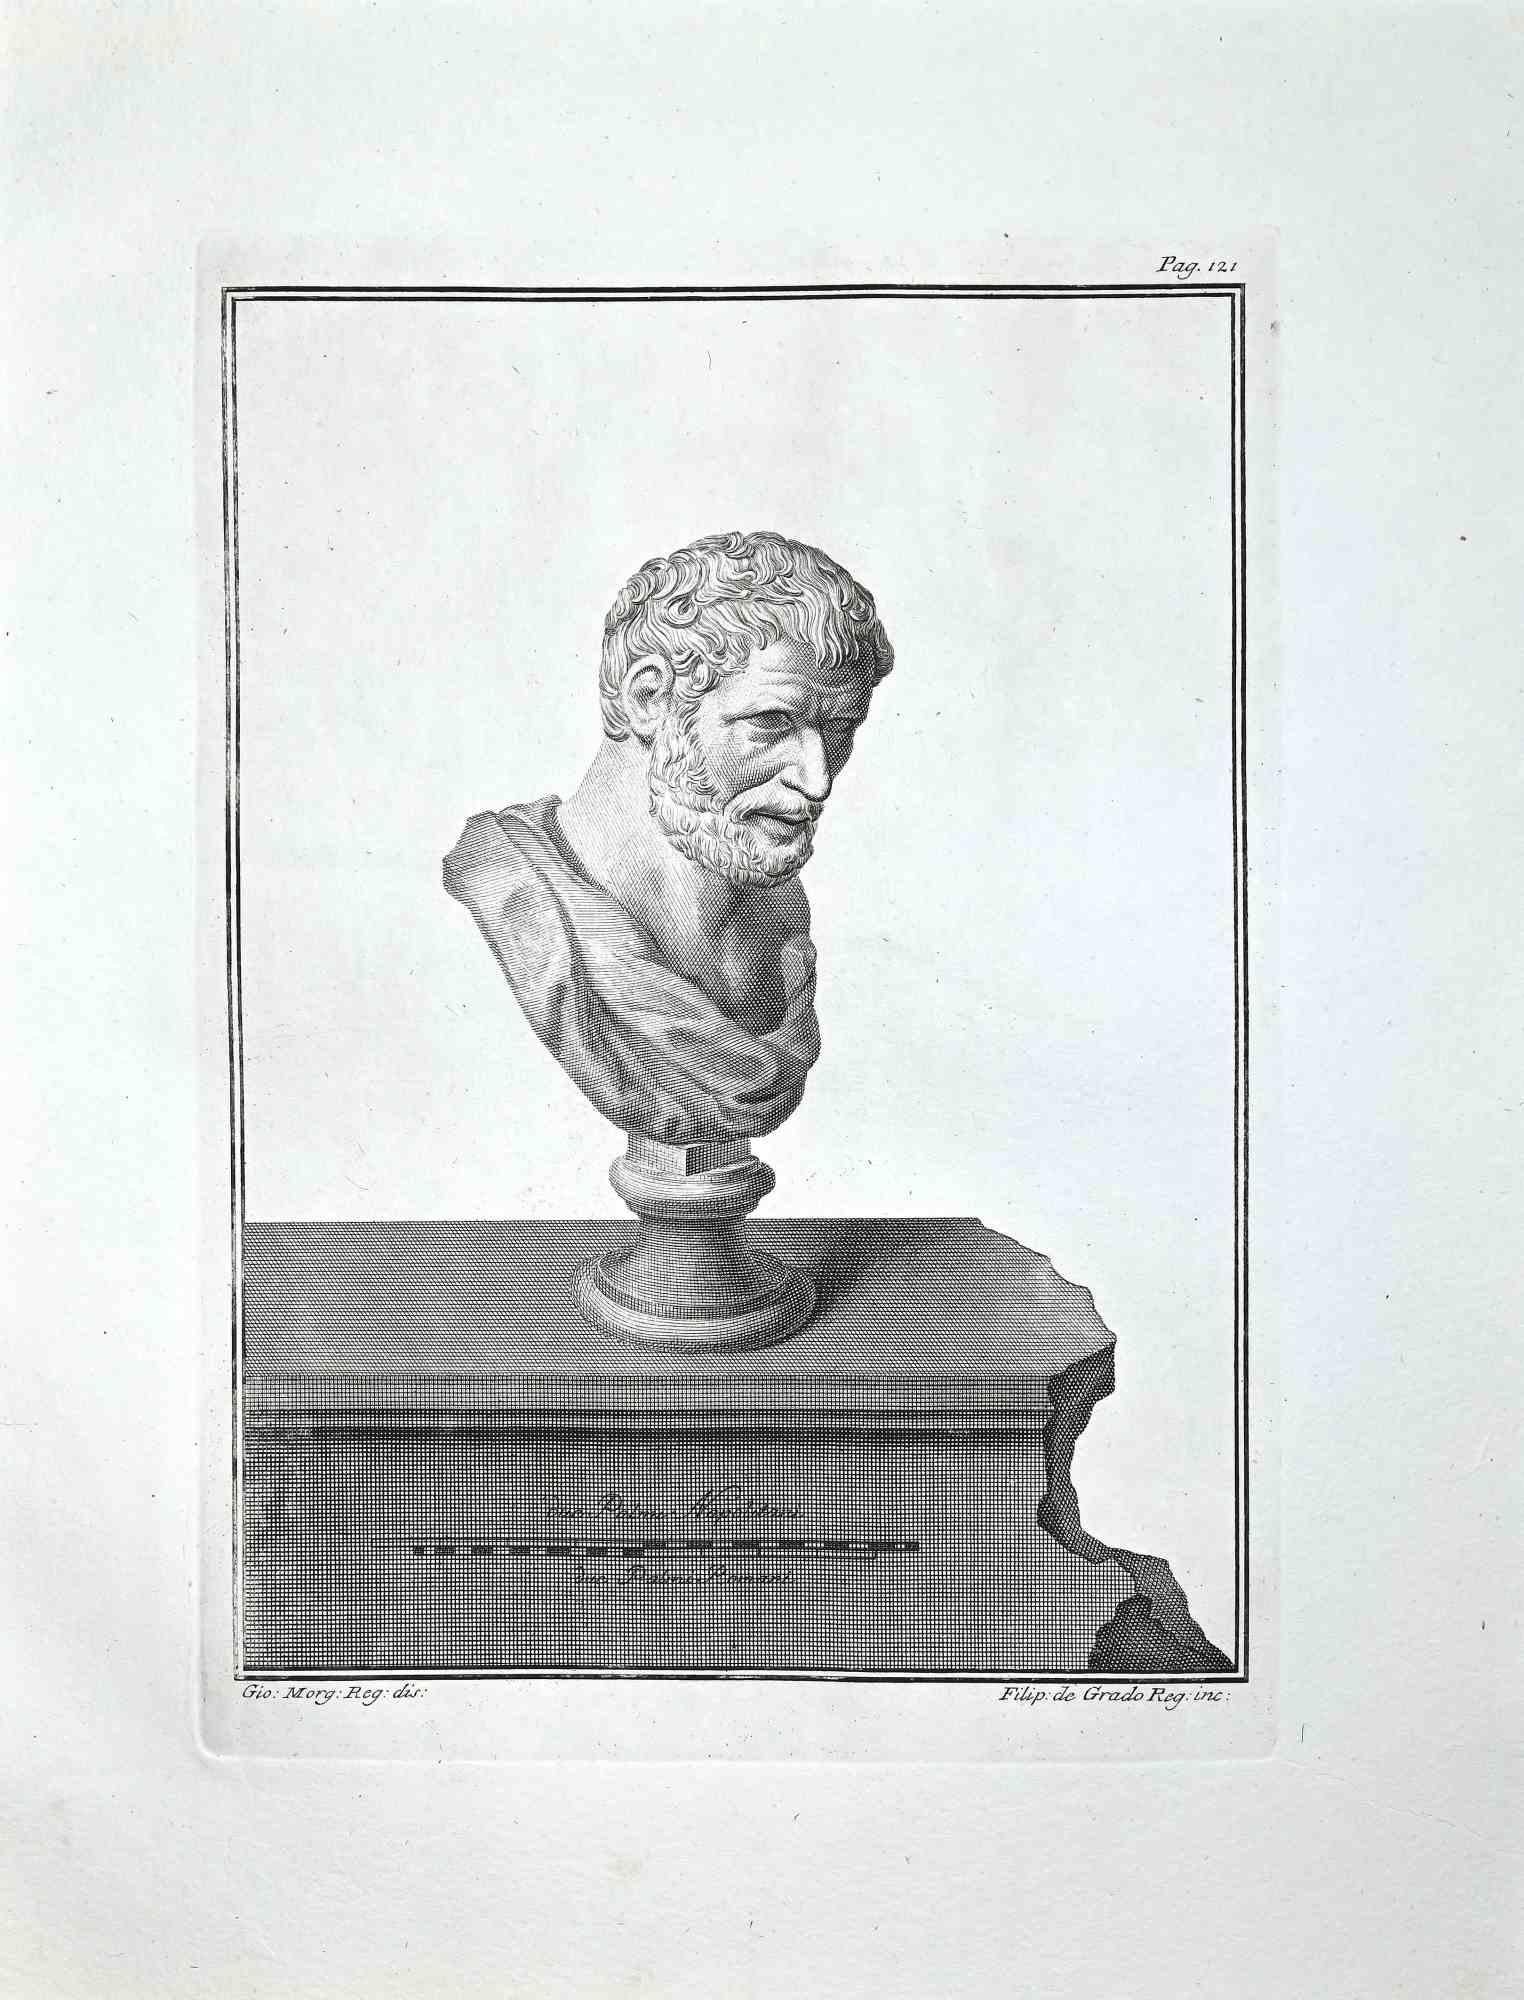 Filippo de Grado Portrait Print – Antike römische Büste - Radierung von Filippo De Grado - Ende des 18. Jahrhunderts